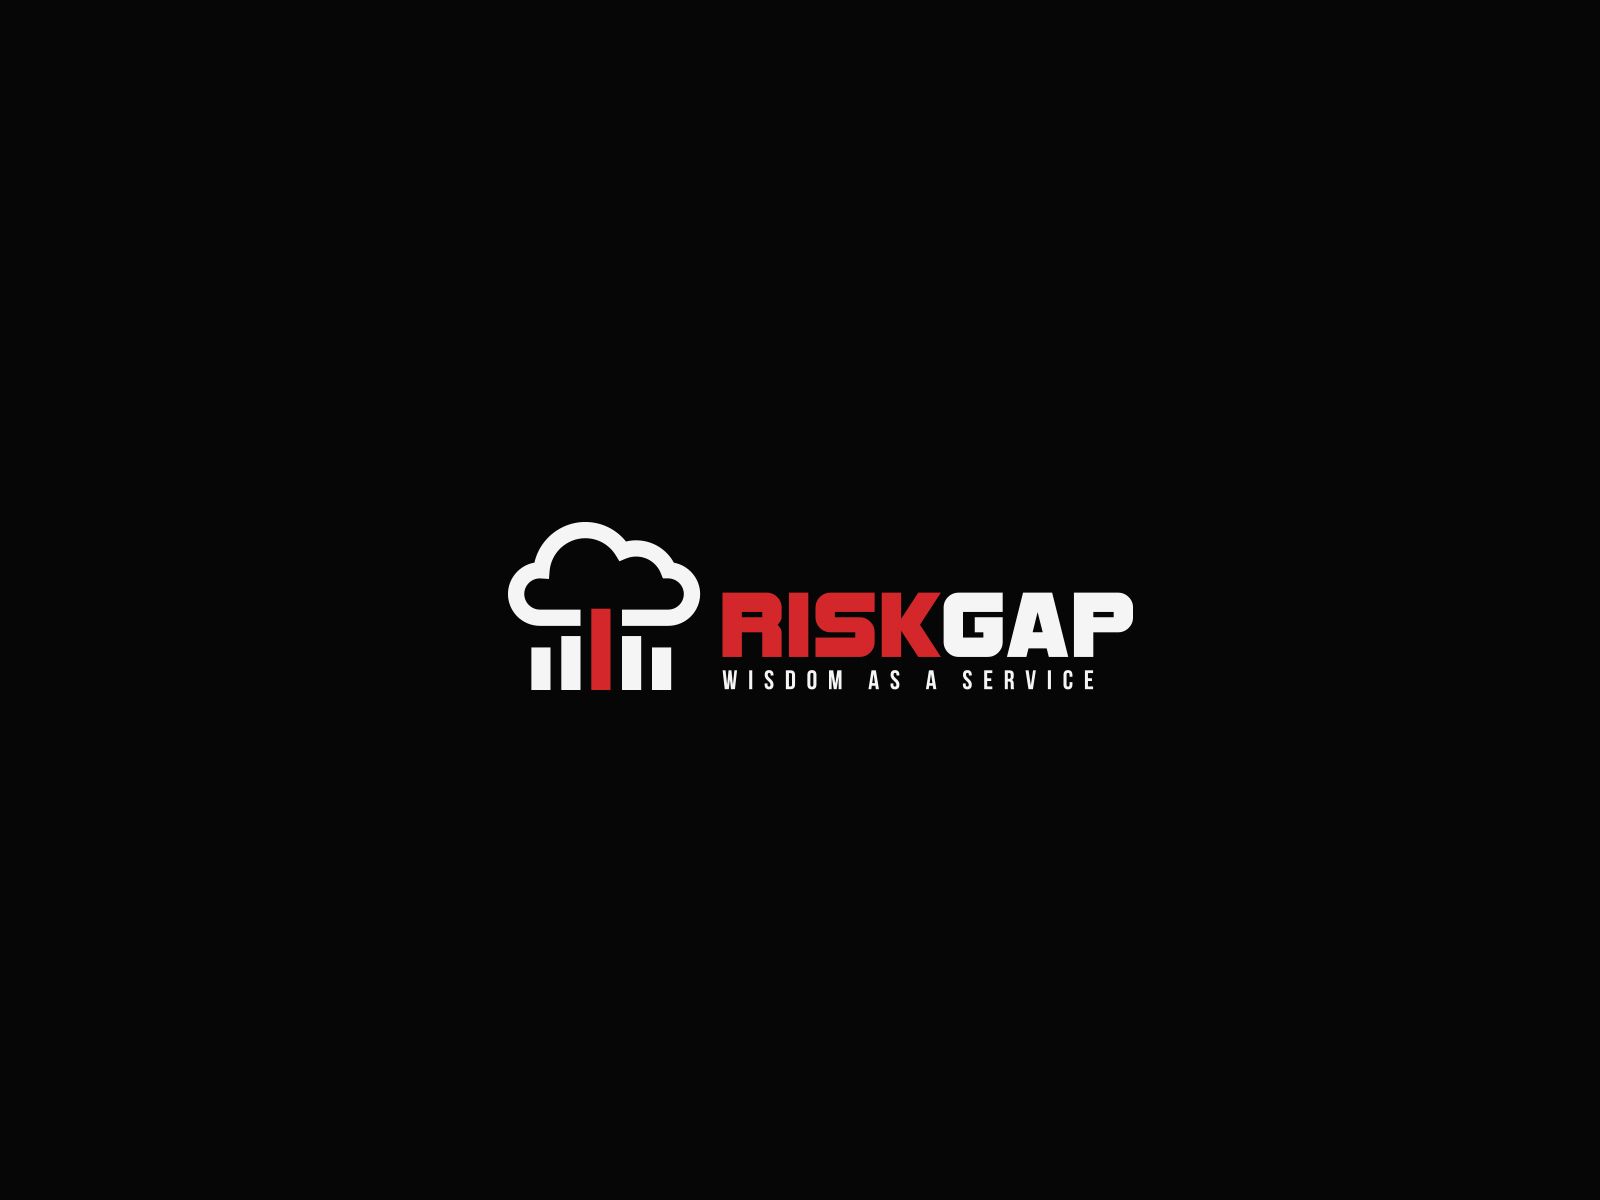 Логотип для веб-сервиса по риск-менеджменту - дизайнер U4po4mak